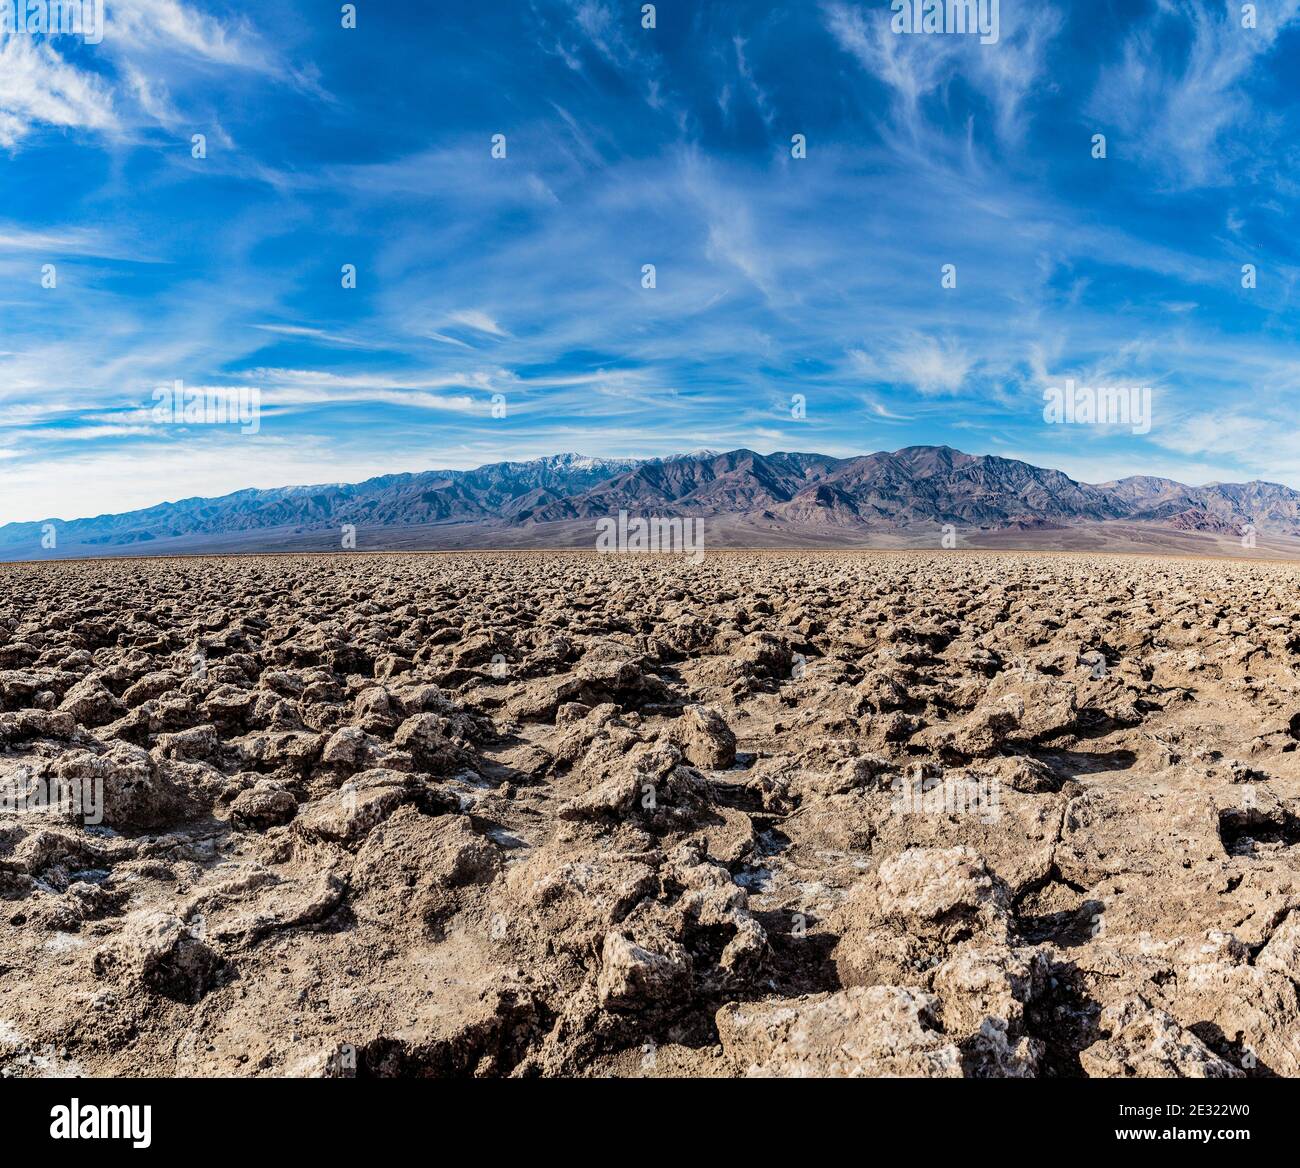 Death Valley, Californie, Etats-Unis: 17 décembre 2018: Vue panoramique sur le parcours de golf Devils, la chaîne de montagnes Panamint située dans la vallée de la mort Banque D'Images